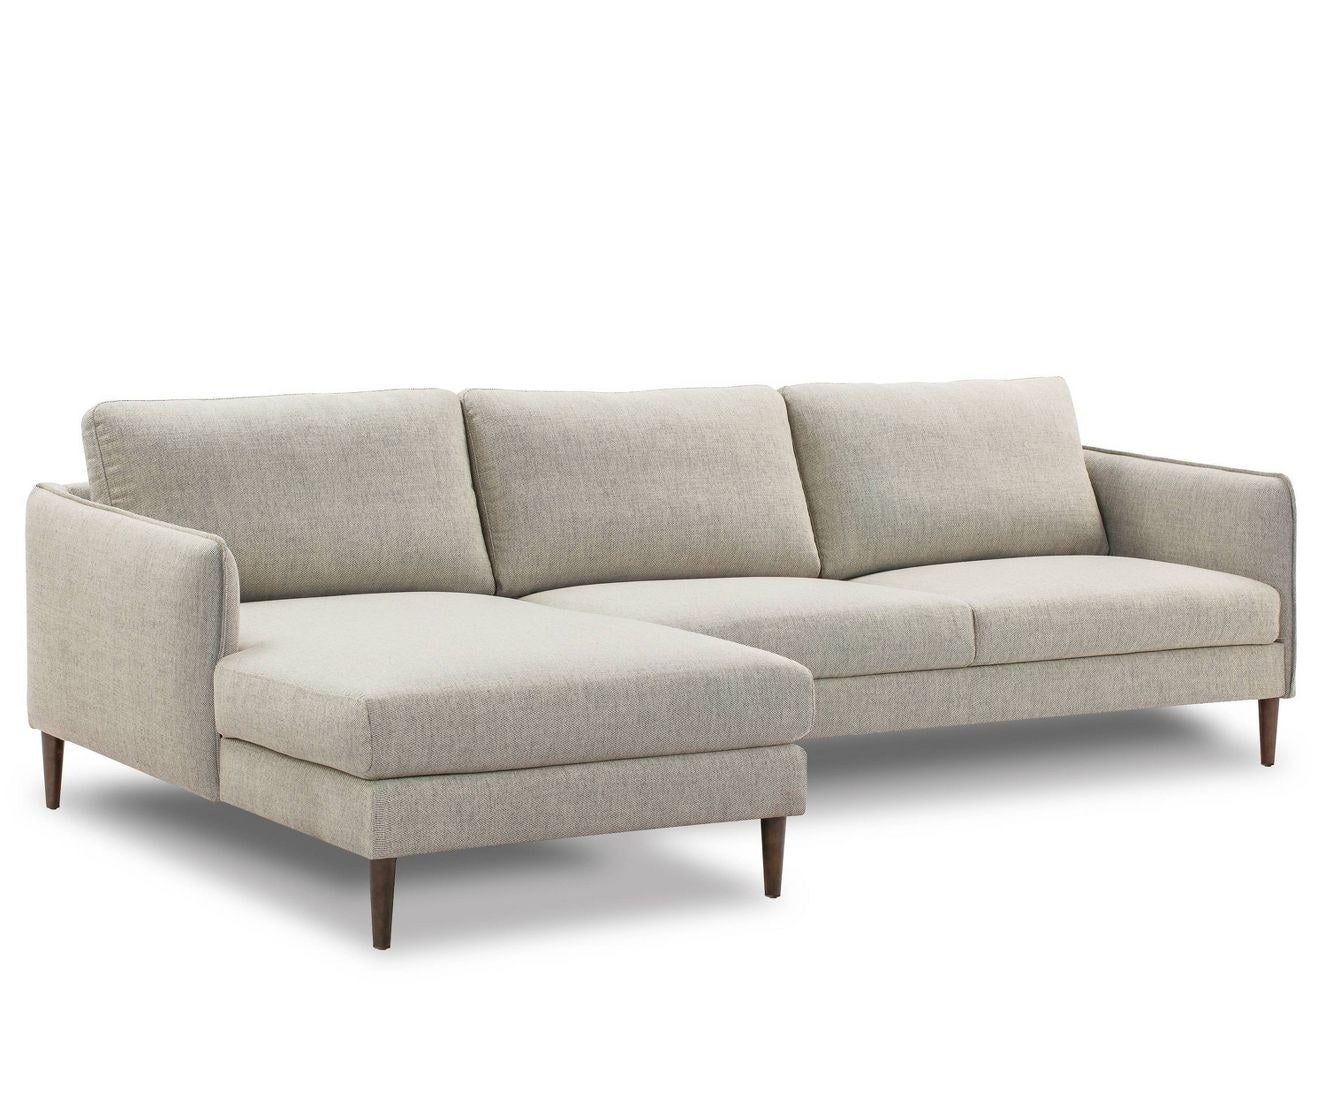 The sofa